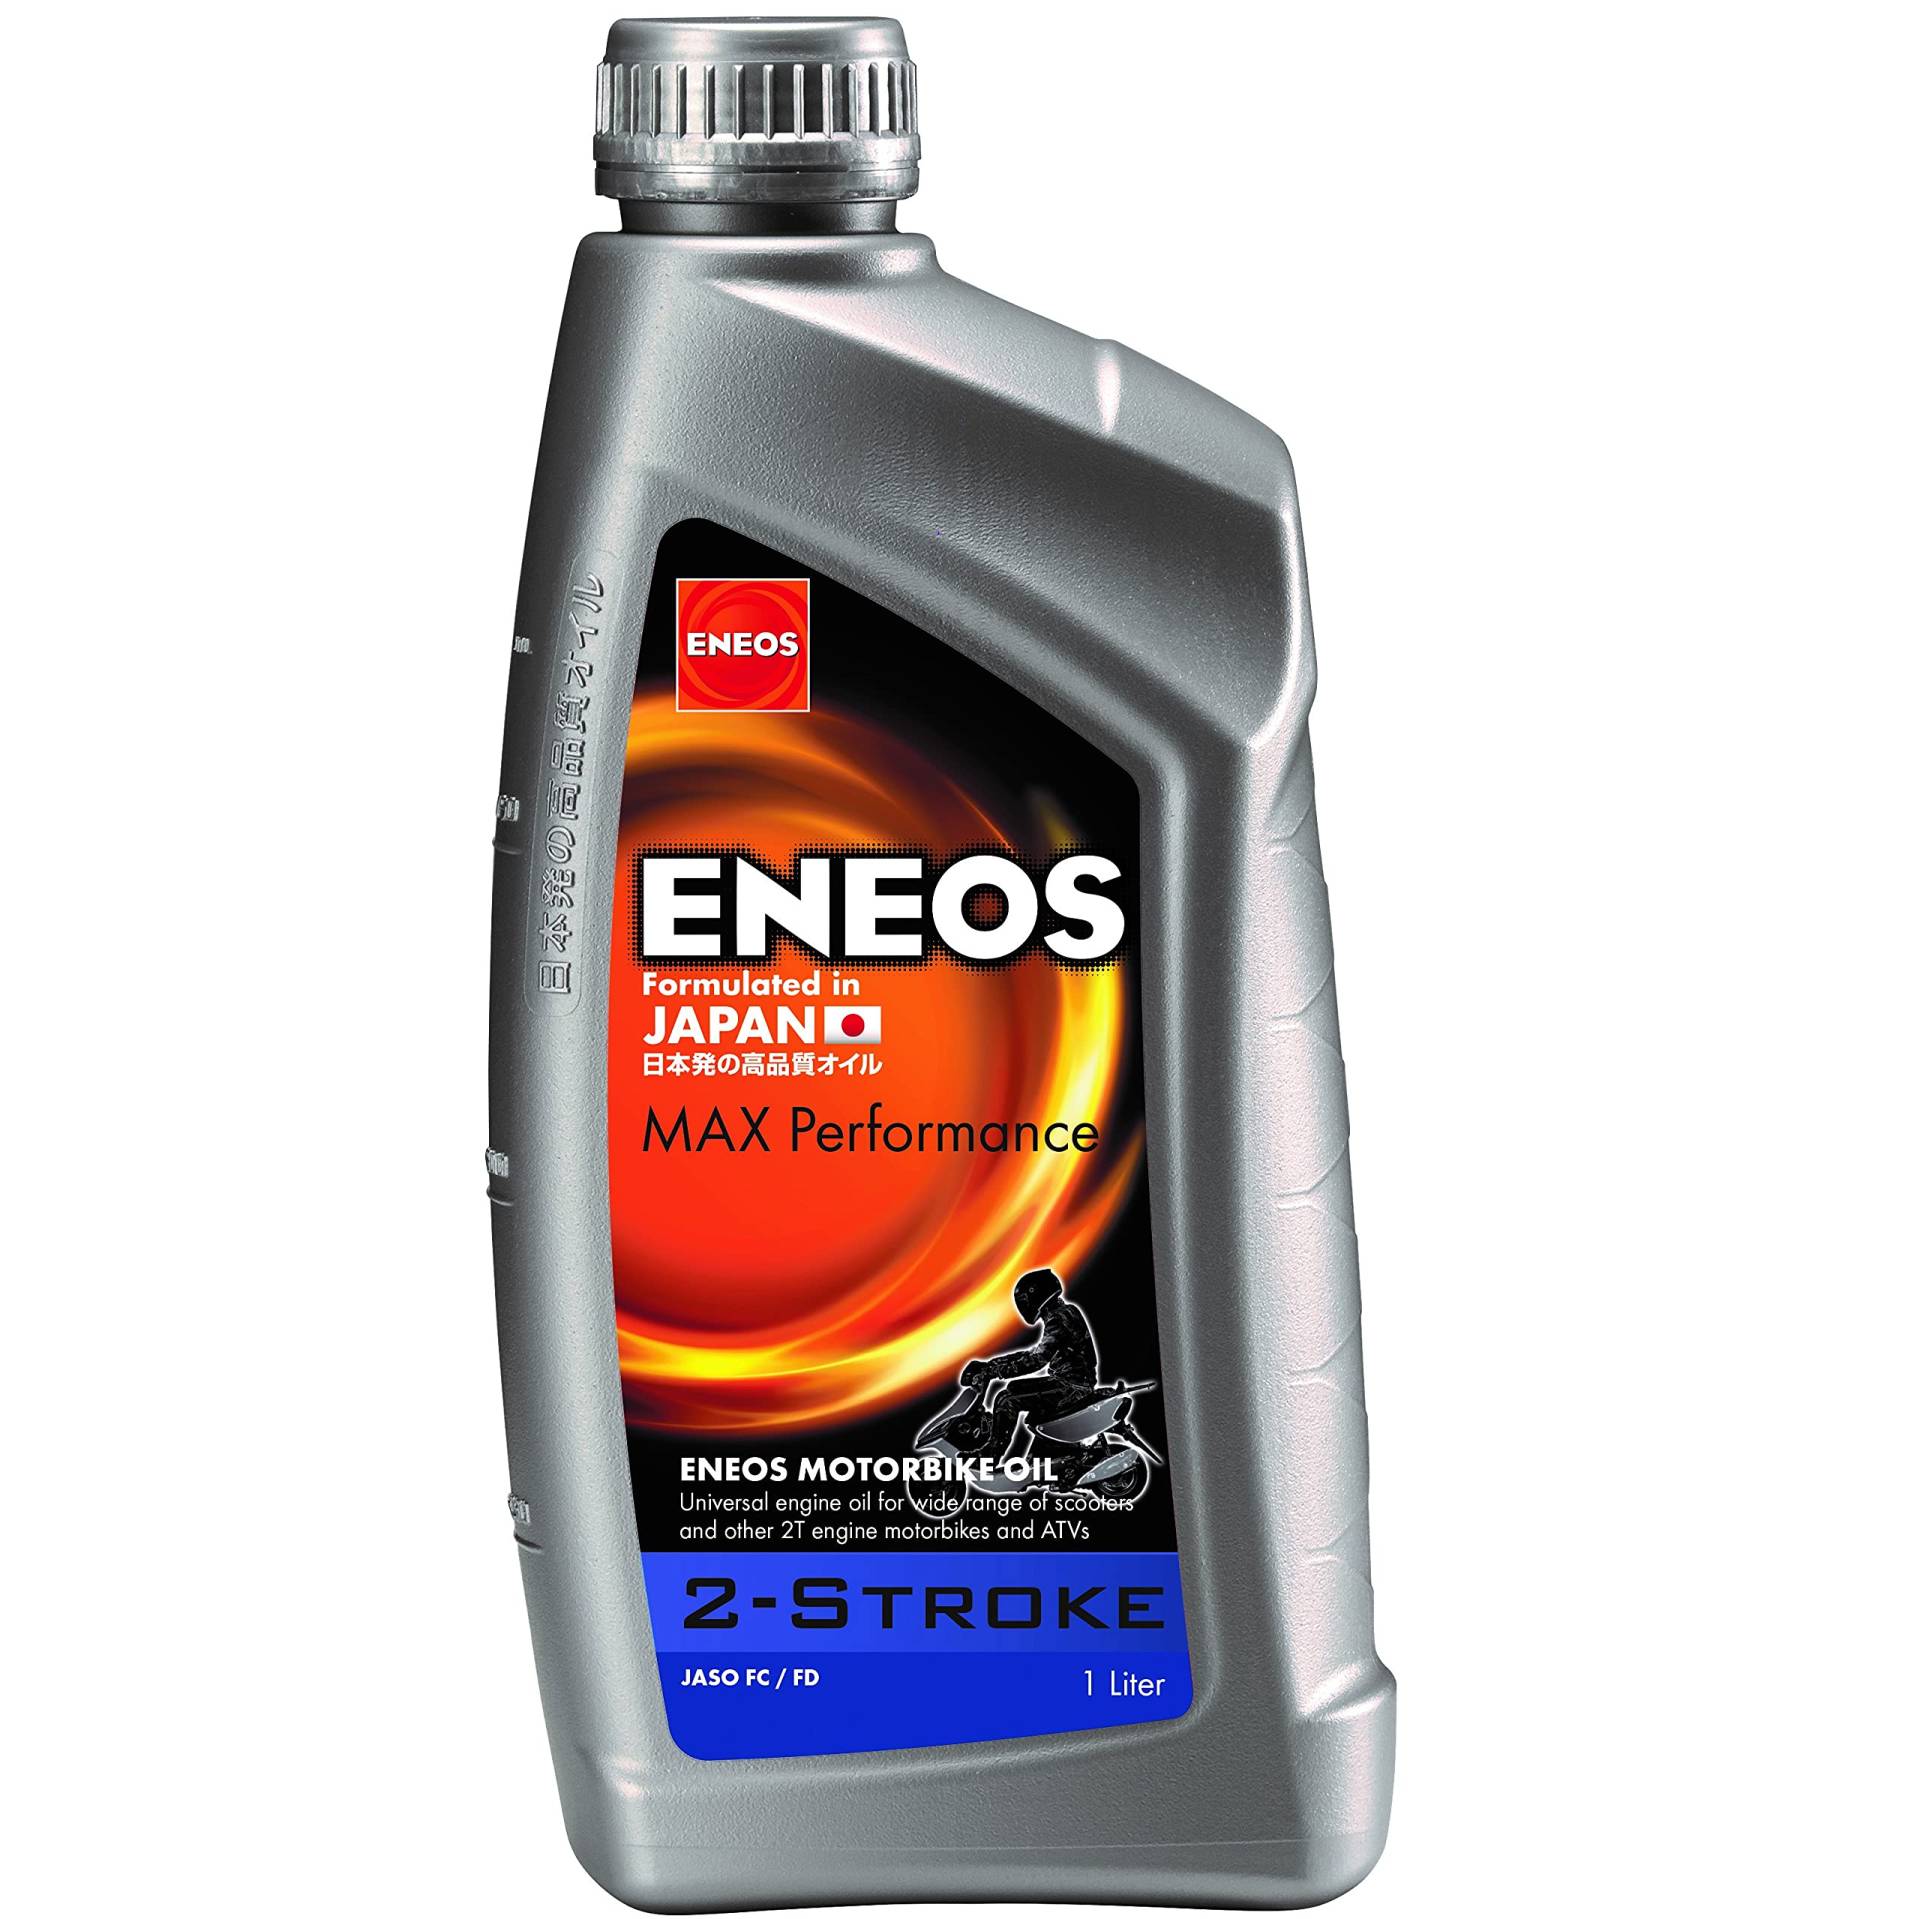 ENEOS Öl Mischung semi-sintetico 2T ENEOS Max Performance 1 Liter (Motoröl 2T)/semi-synthetic Oil 2T ENEOS Max Performance 2-stroke 1litre (Engine Oil 2T) von Eneos